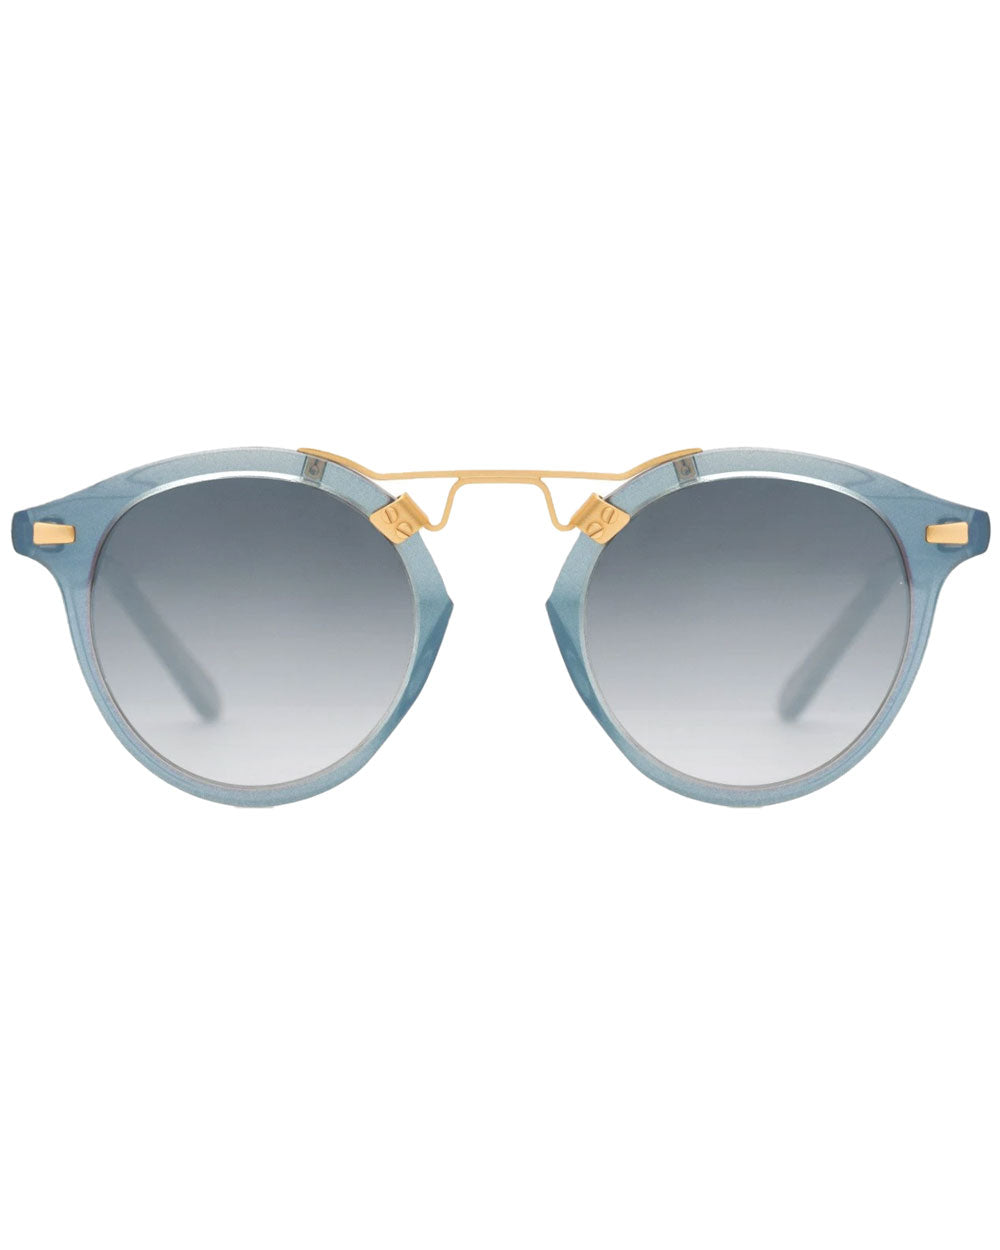 St. Louis Sunglasses in Opal 24K